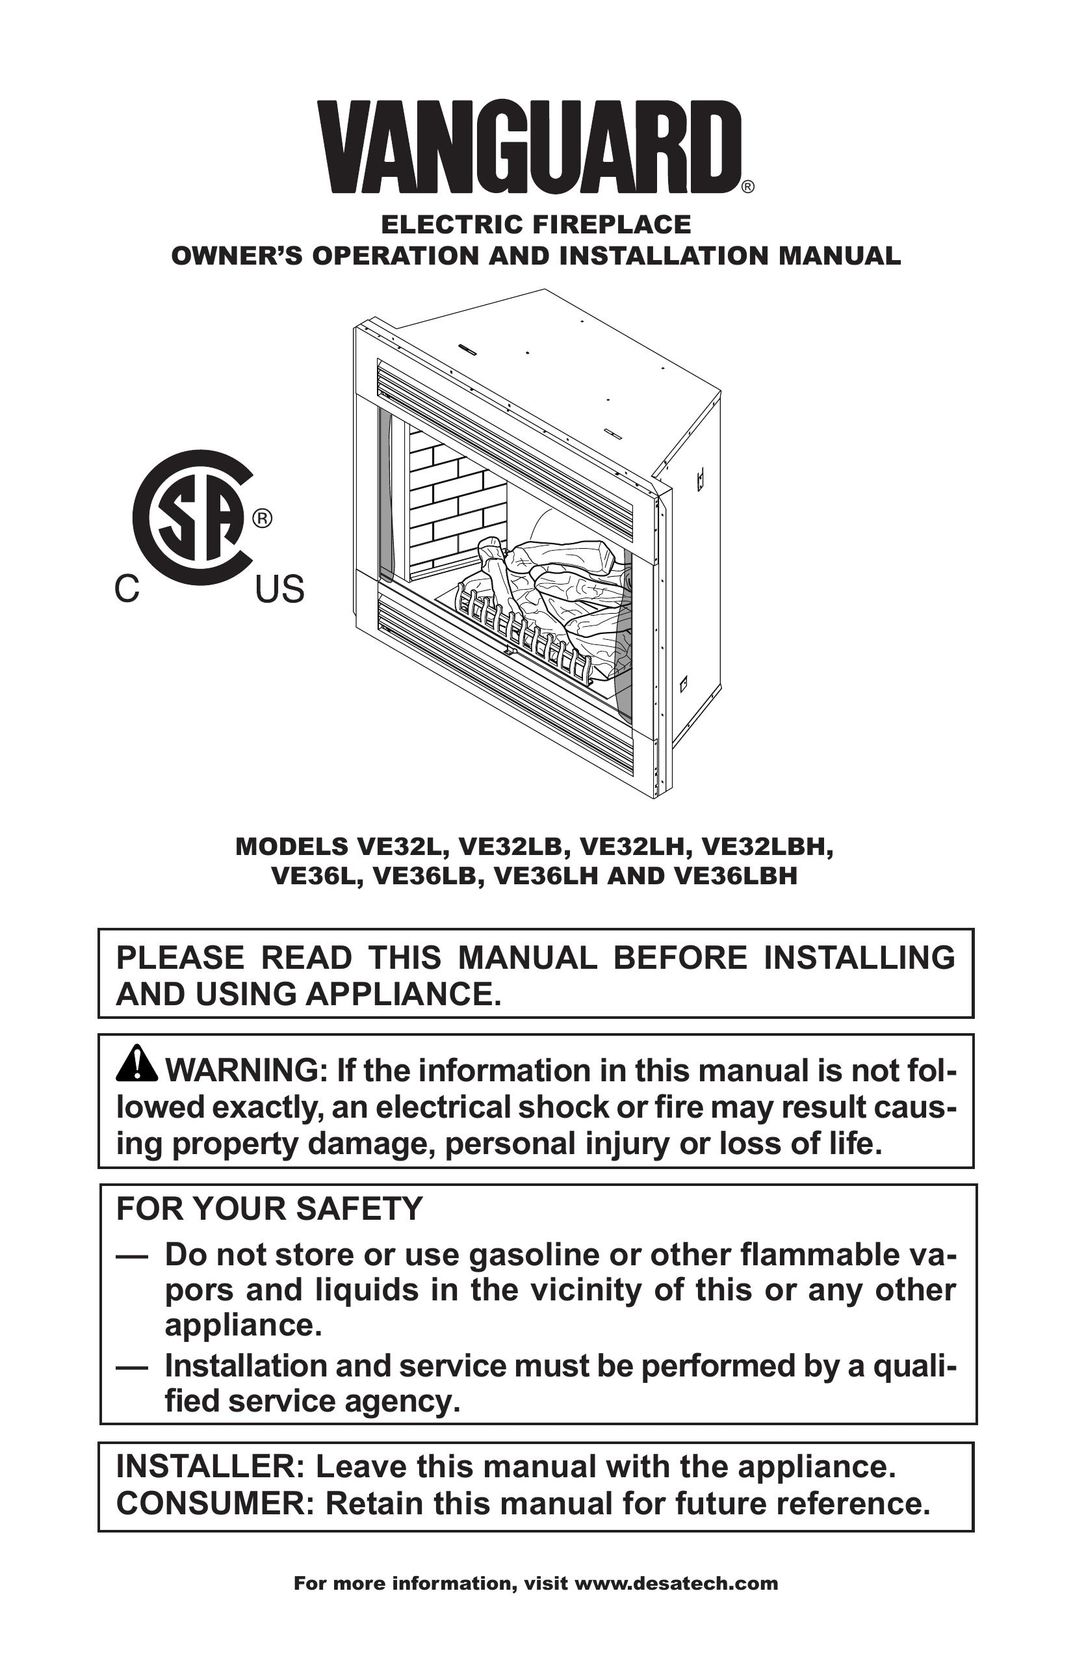 Vanguard VE36LB Indoor Fireplace User Manual